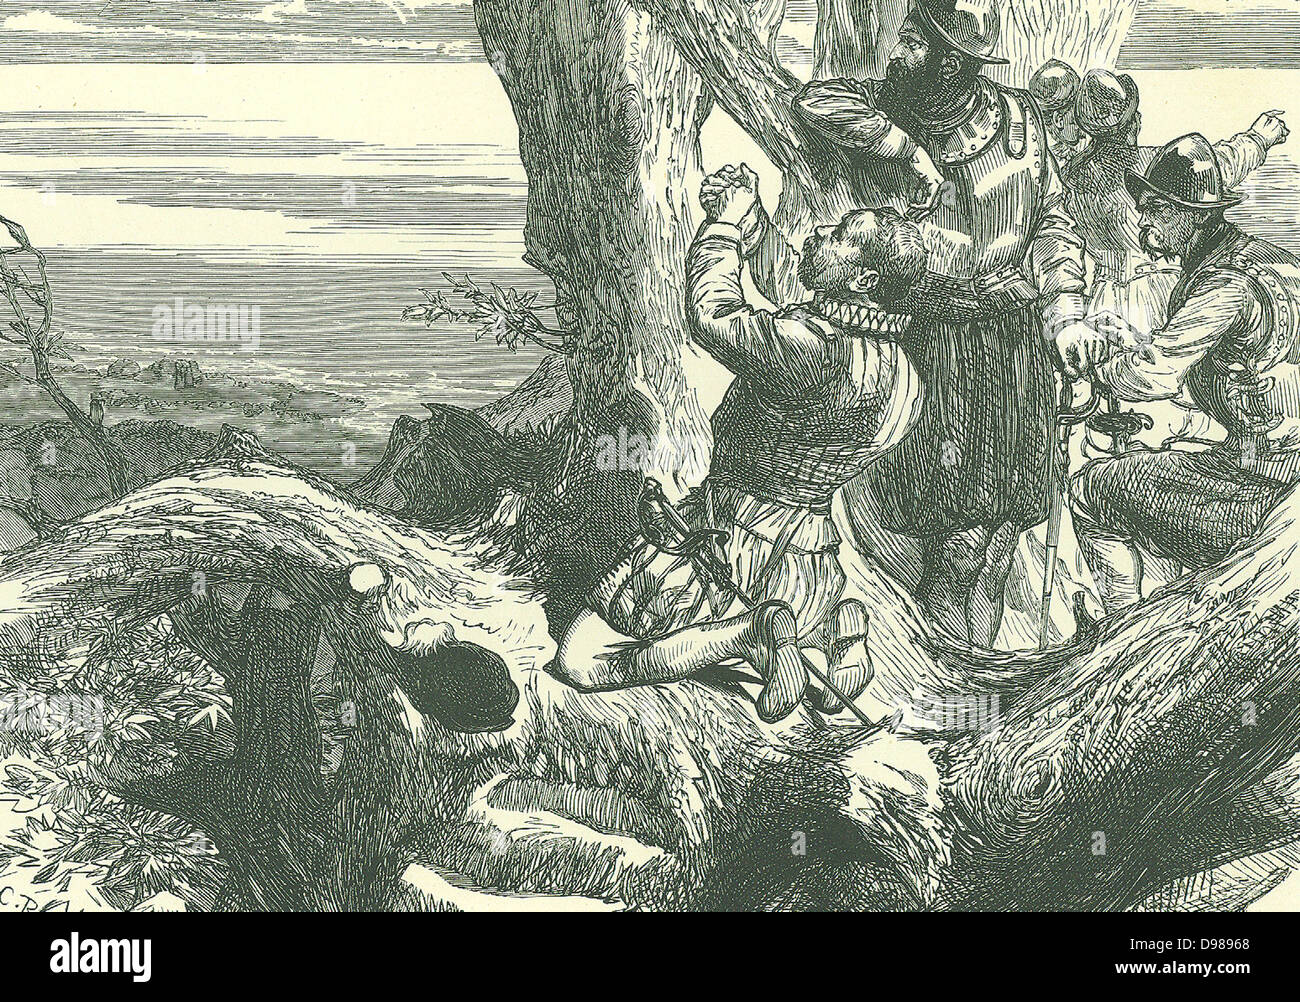 Francis Drake (c1540-1596) et navigateur anglais corsaire, sur l'Isthme de Panama en 1572 de devenir le premier Anglais à voir l'océan Pacifique. Illustration de la fin du xixe siècle. Banque D'Images